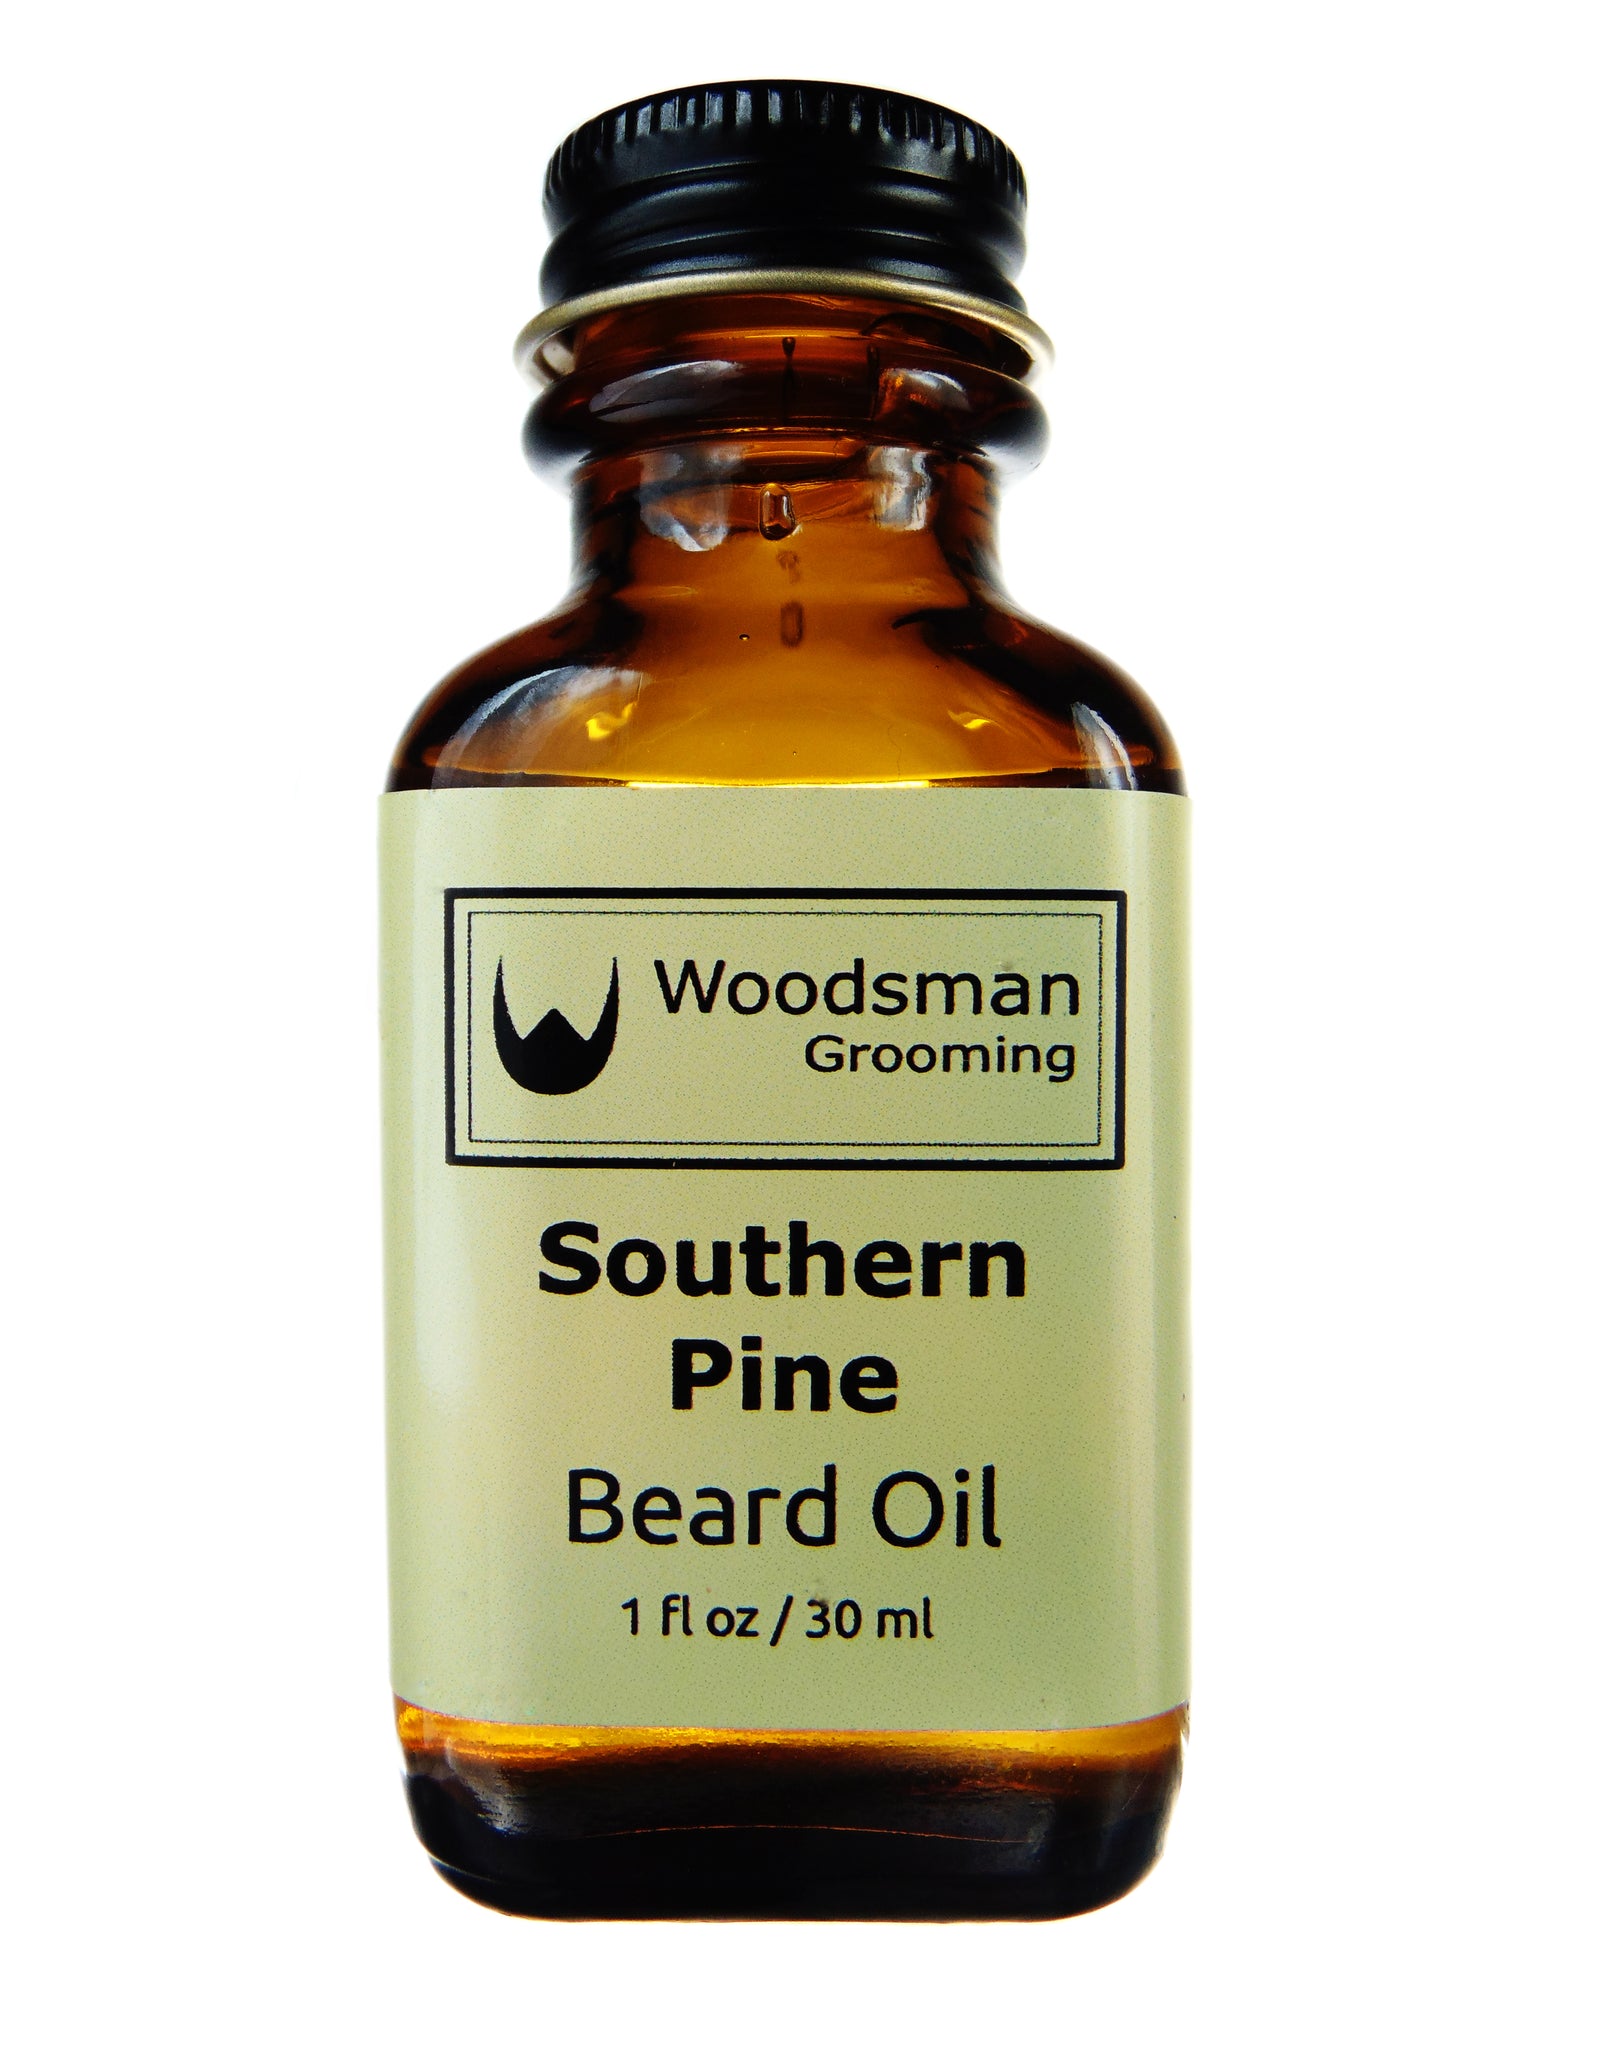 Southern Pine Beard Oil